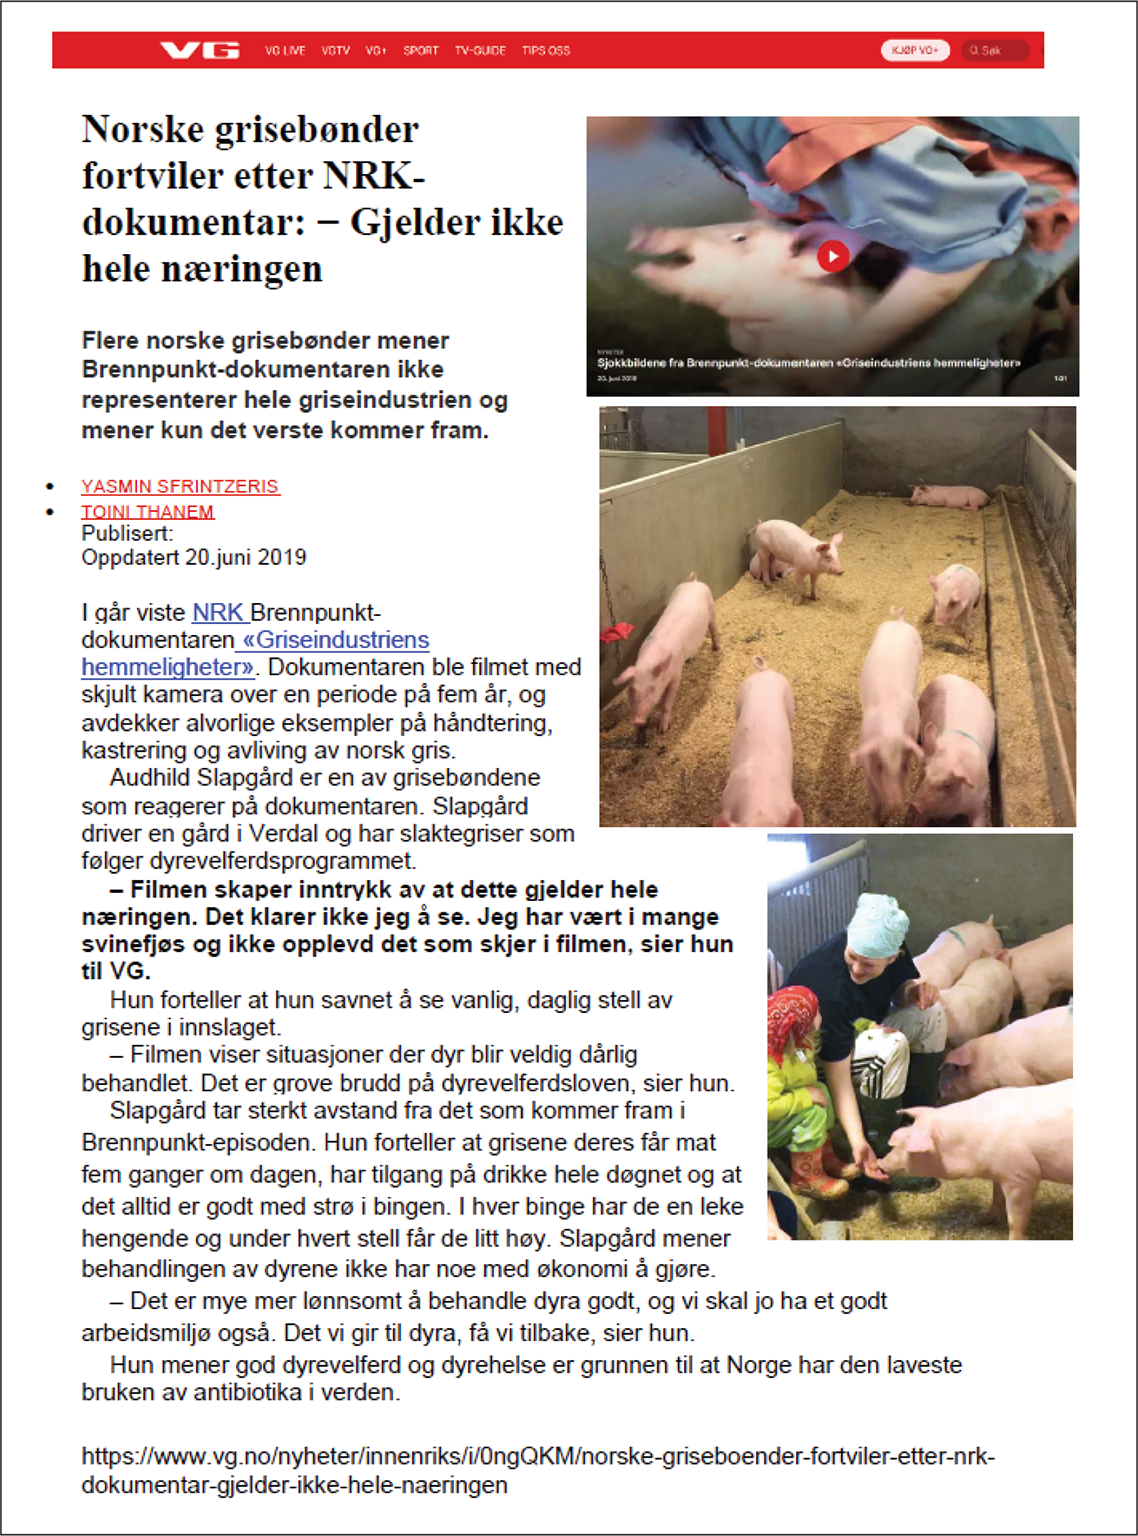 Faksimile av artikkel fra VG. Tittelen er "Norske grisebønder fortviler etter NRK-dokumentar: - Gjelder ikke hele næringen." Artikkelbildene viser et skjermbilde med en hylende gris fra NRK-dokumentaren og grisunger i binger.